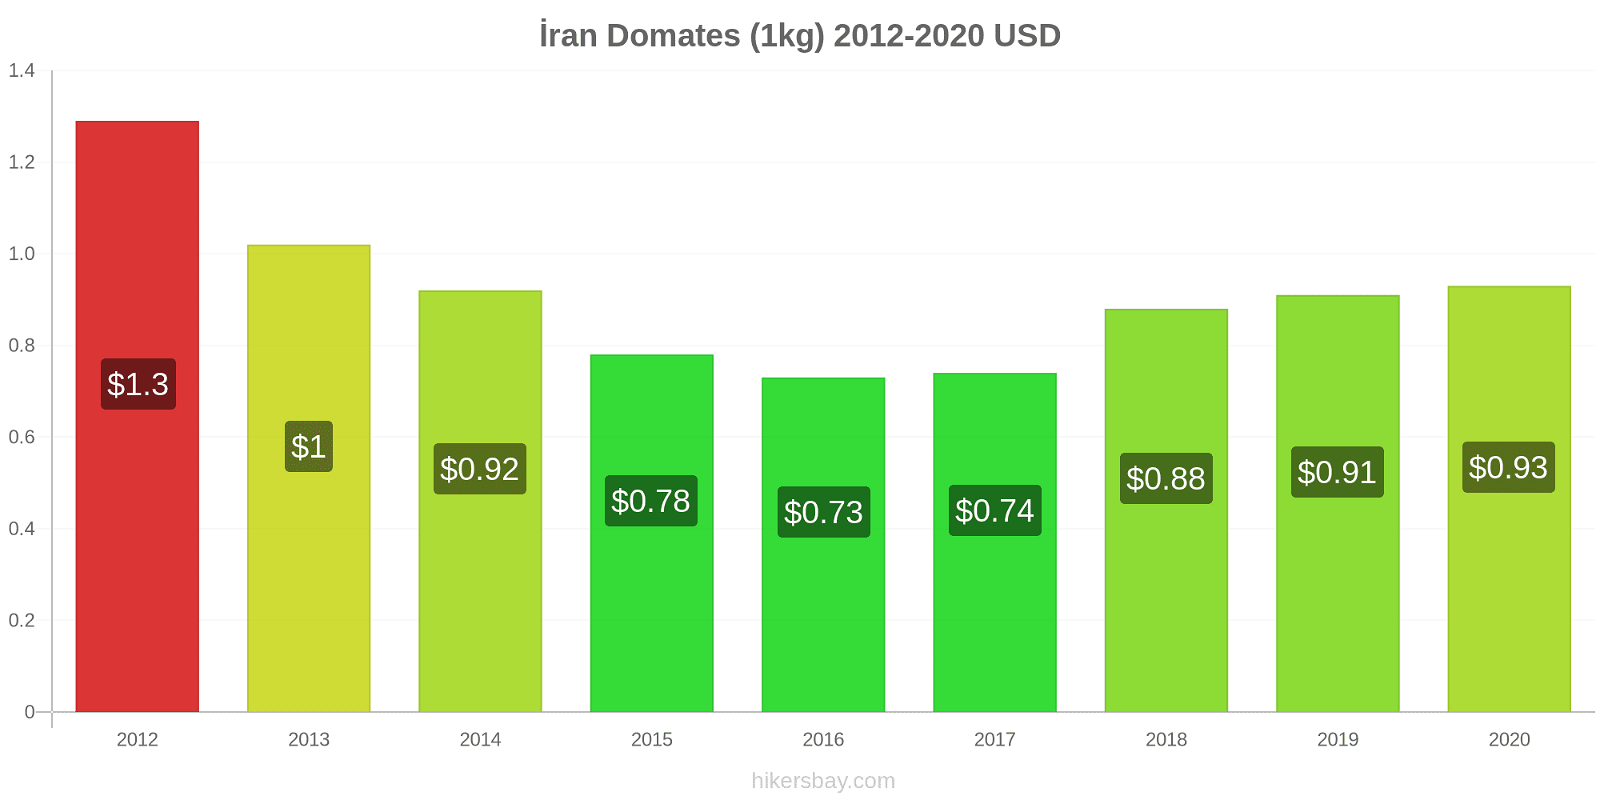 İran fiyat değişiklikleri Domates (1kg) hikersbay.com